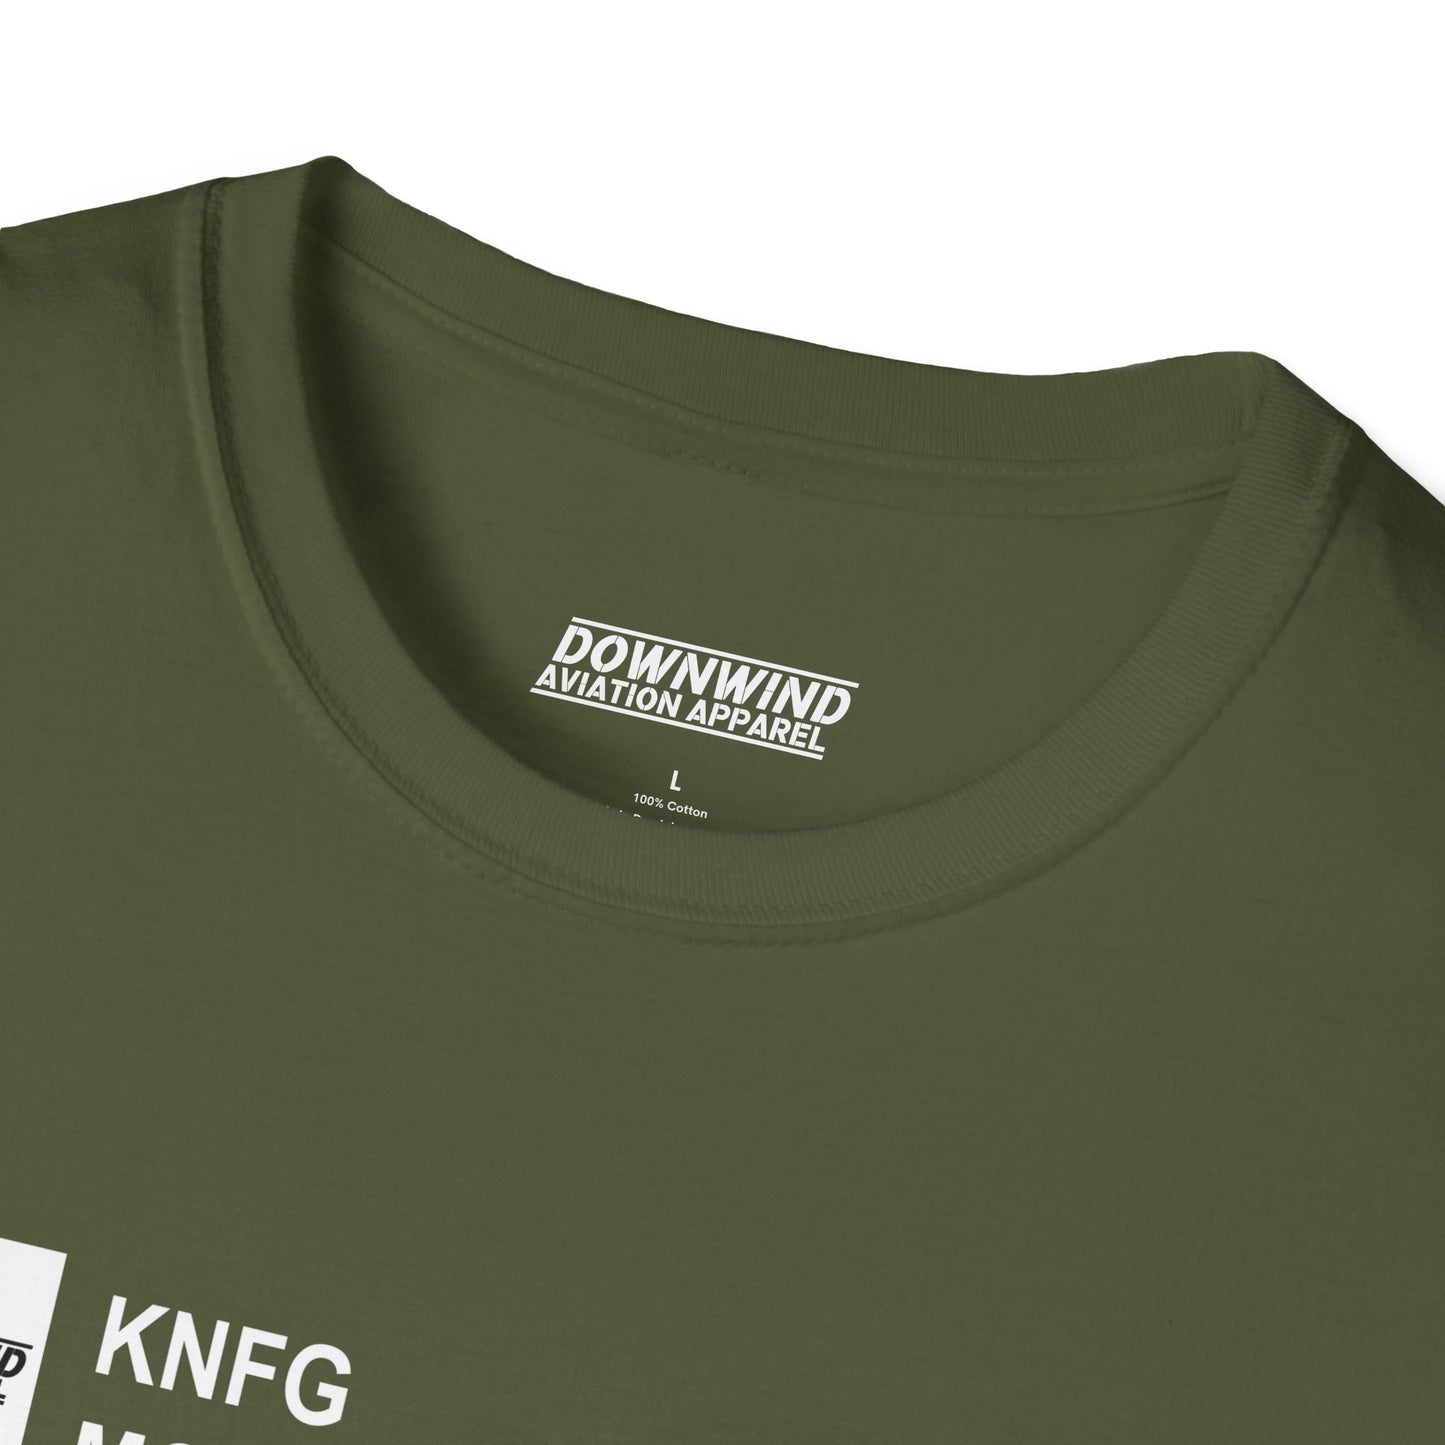 KNFG / MCAS Camp Pendleton T-Shirt